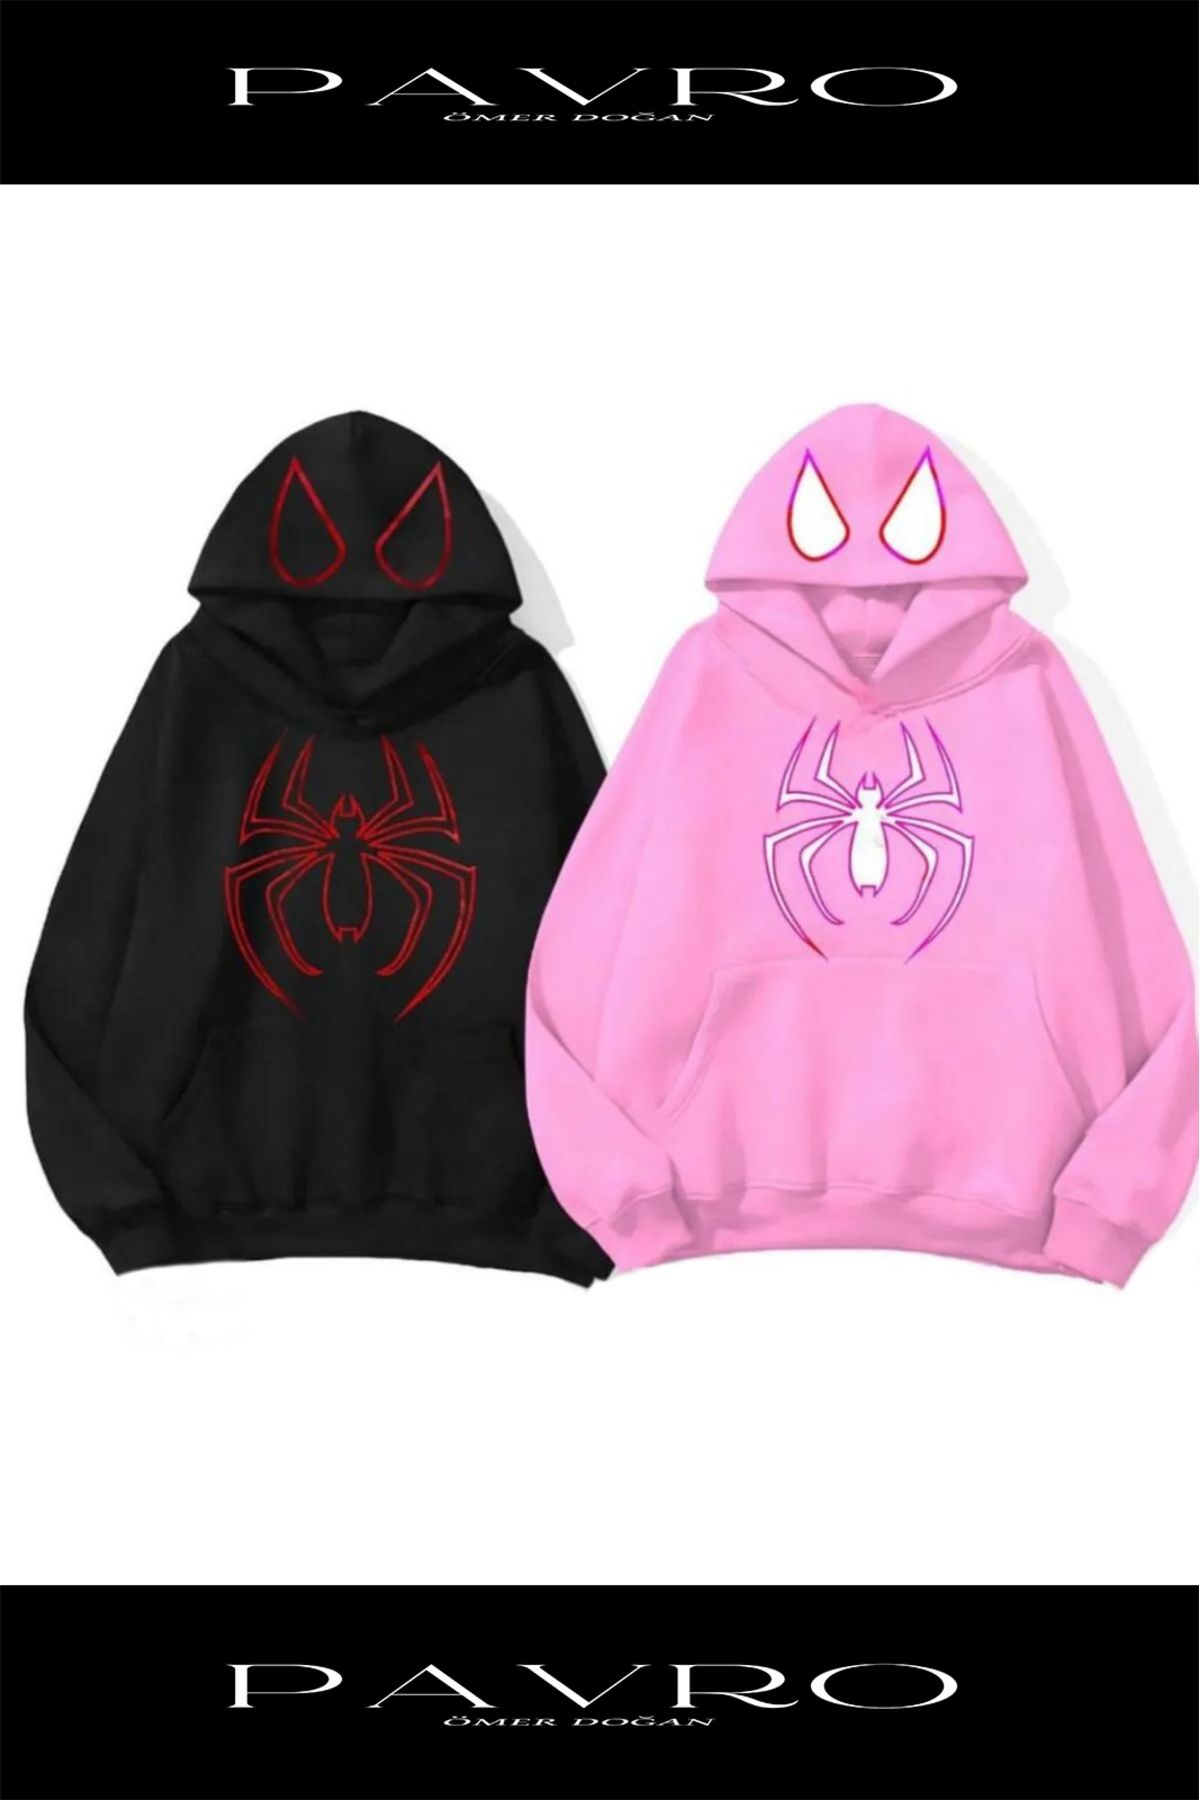 PAVRO Sevgili Çift Kombinleri örümcek Tasarımlı 2 Li Ürün Kapşonlu Sweatshirt